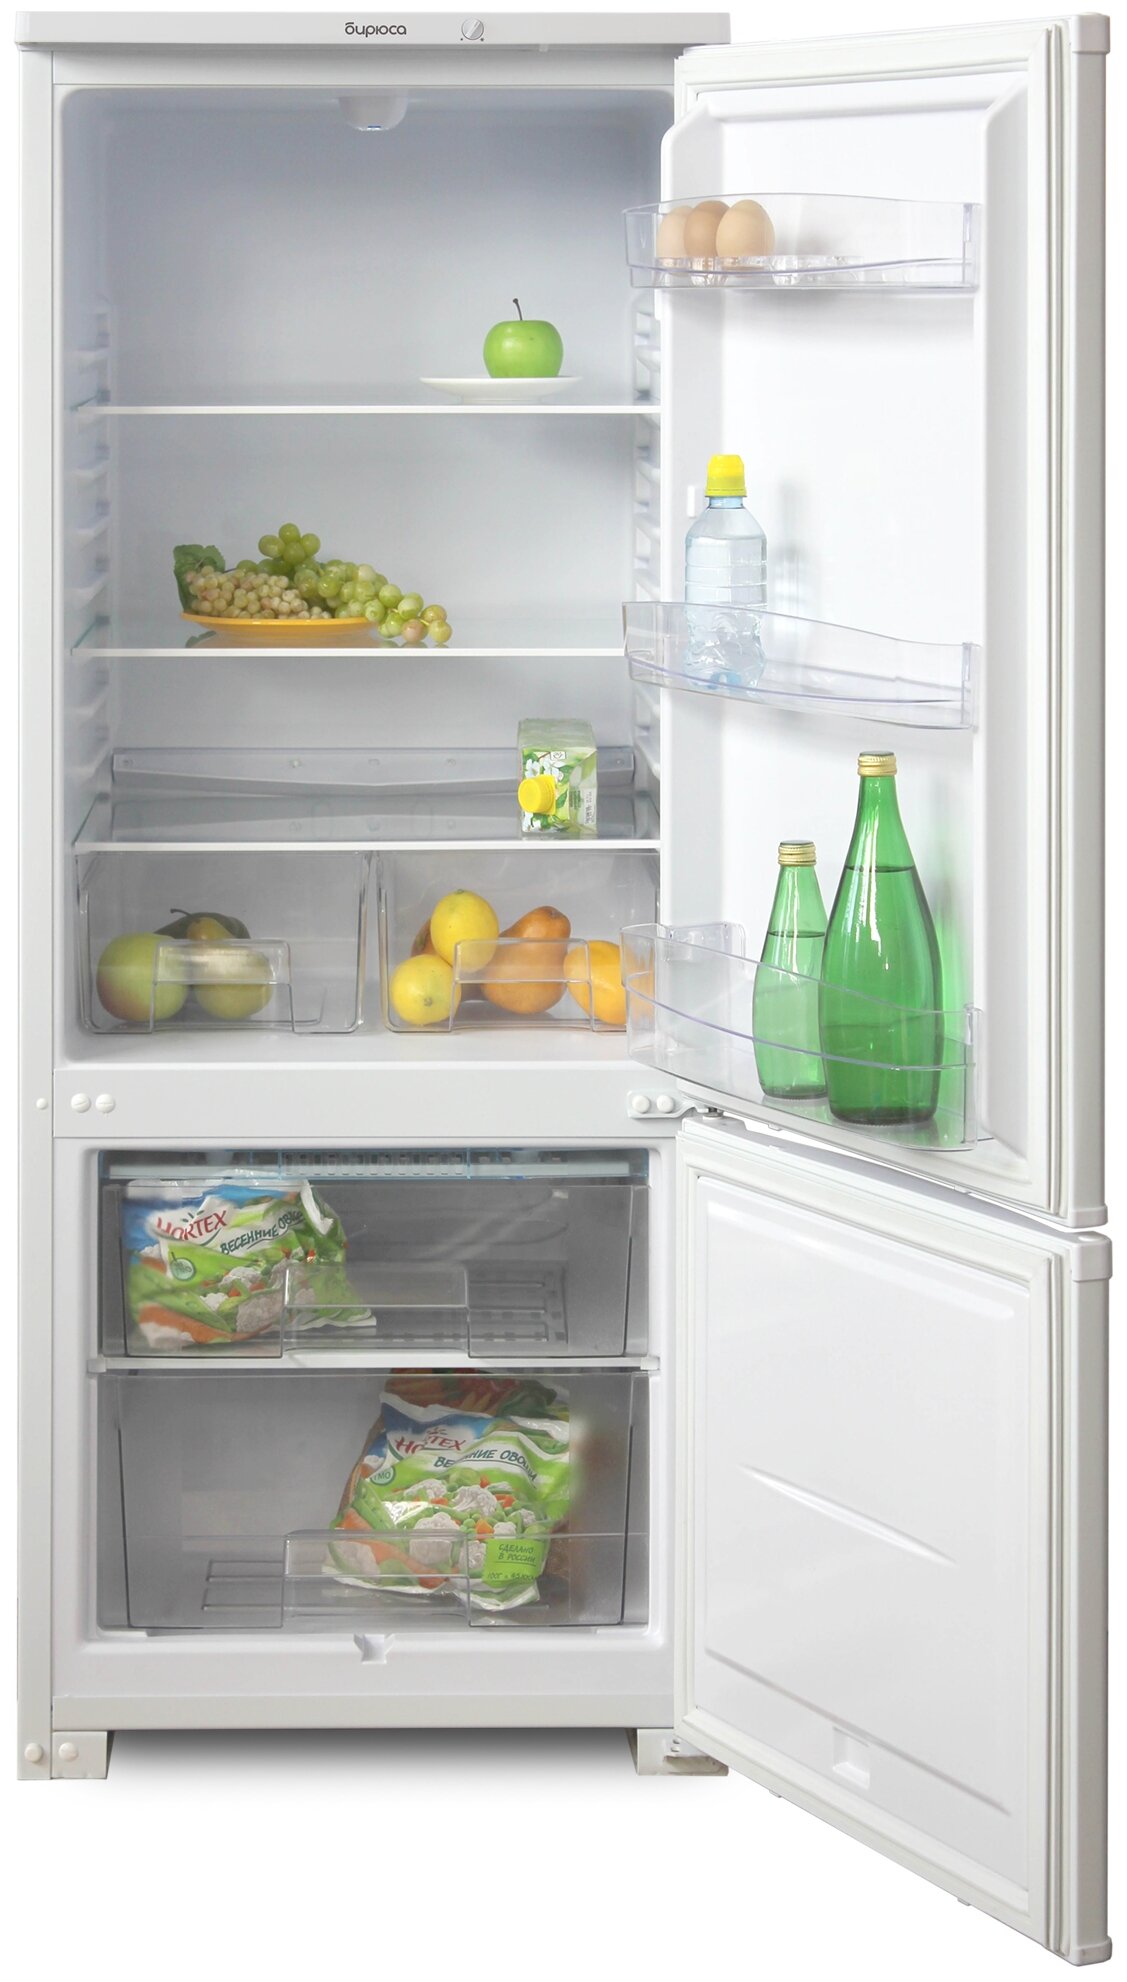 Холодильник БИРЮСА M151 240л металлик